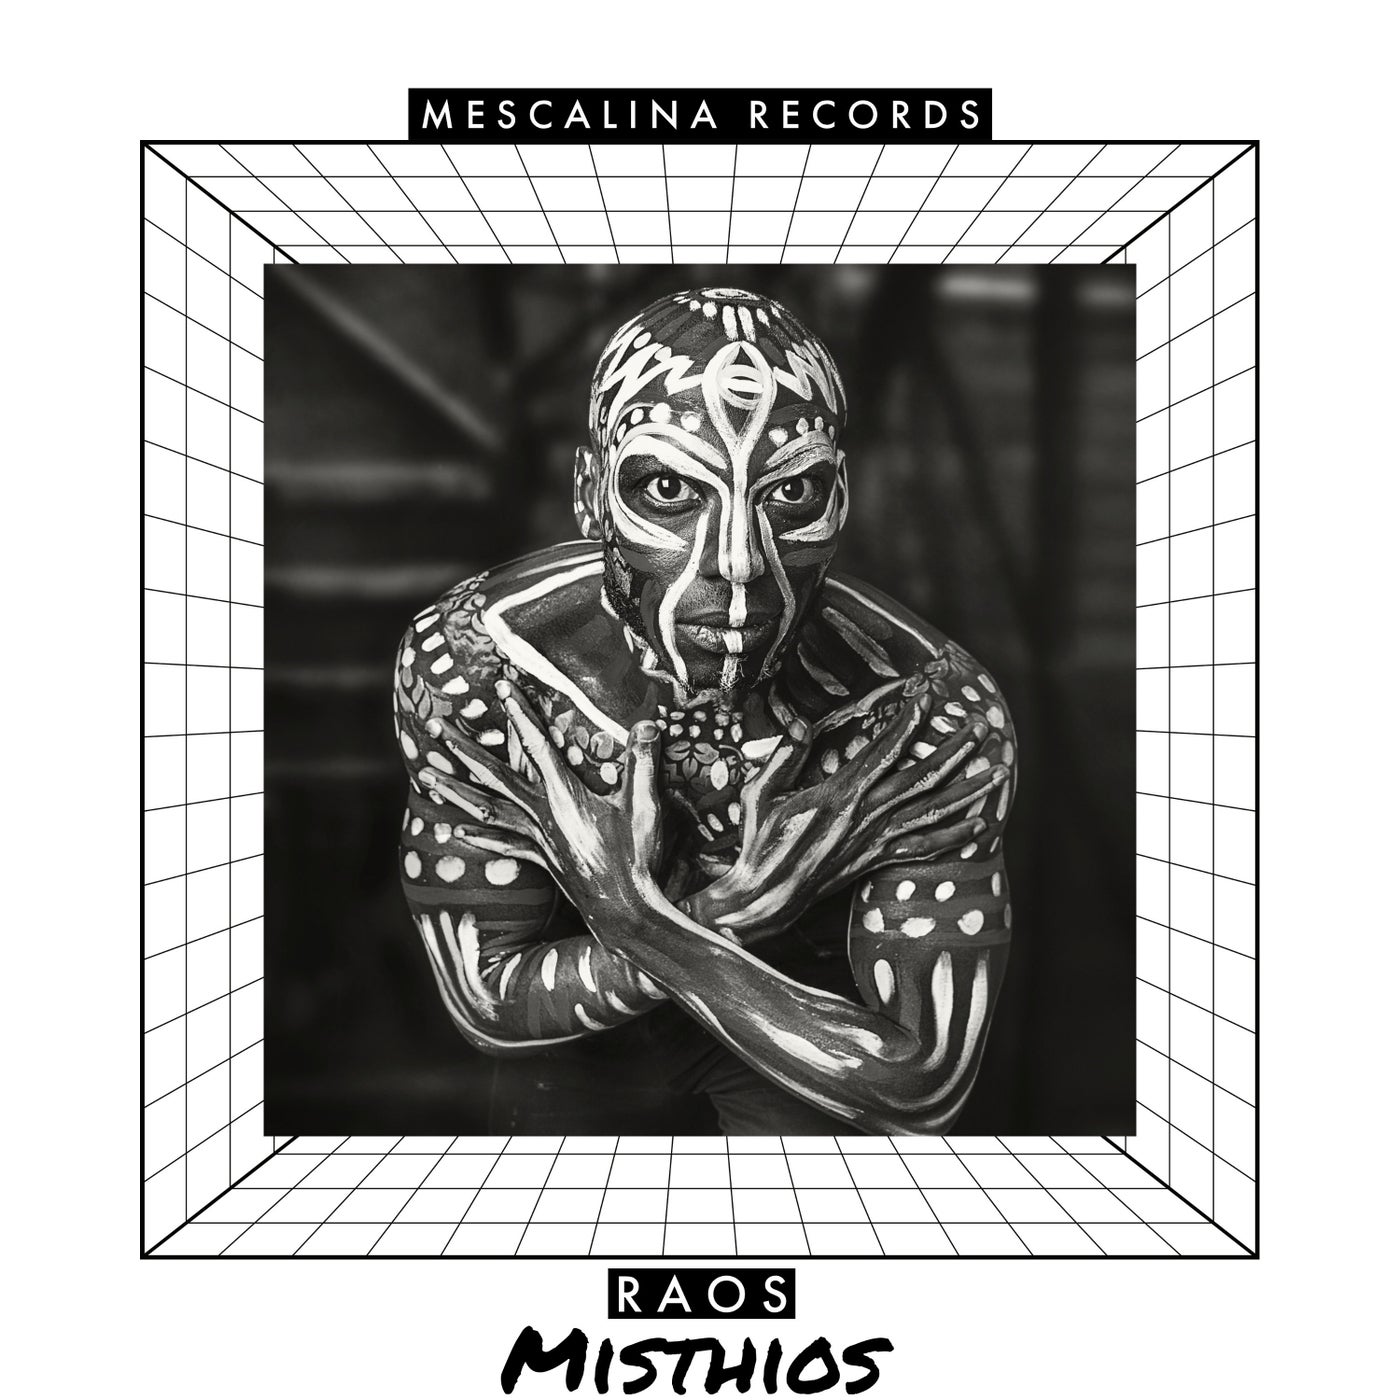 Misthios